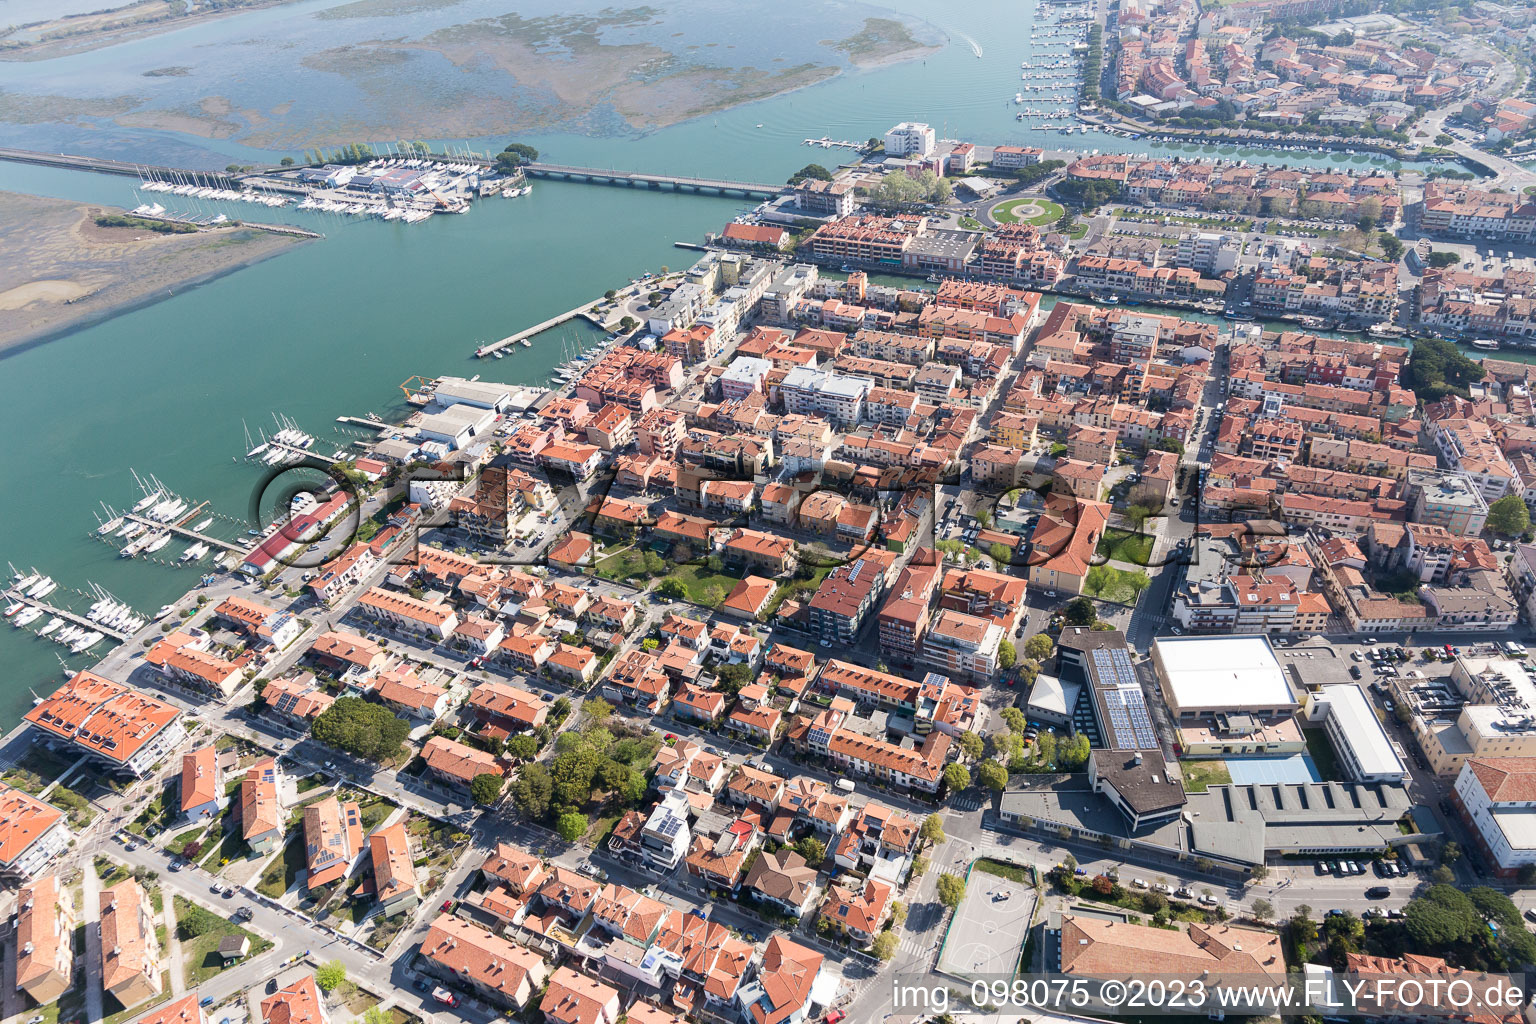 Grado im Bundesland Friaul-Julisch Venetien, Italien von oben gesehen